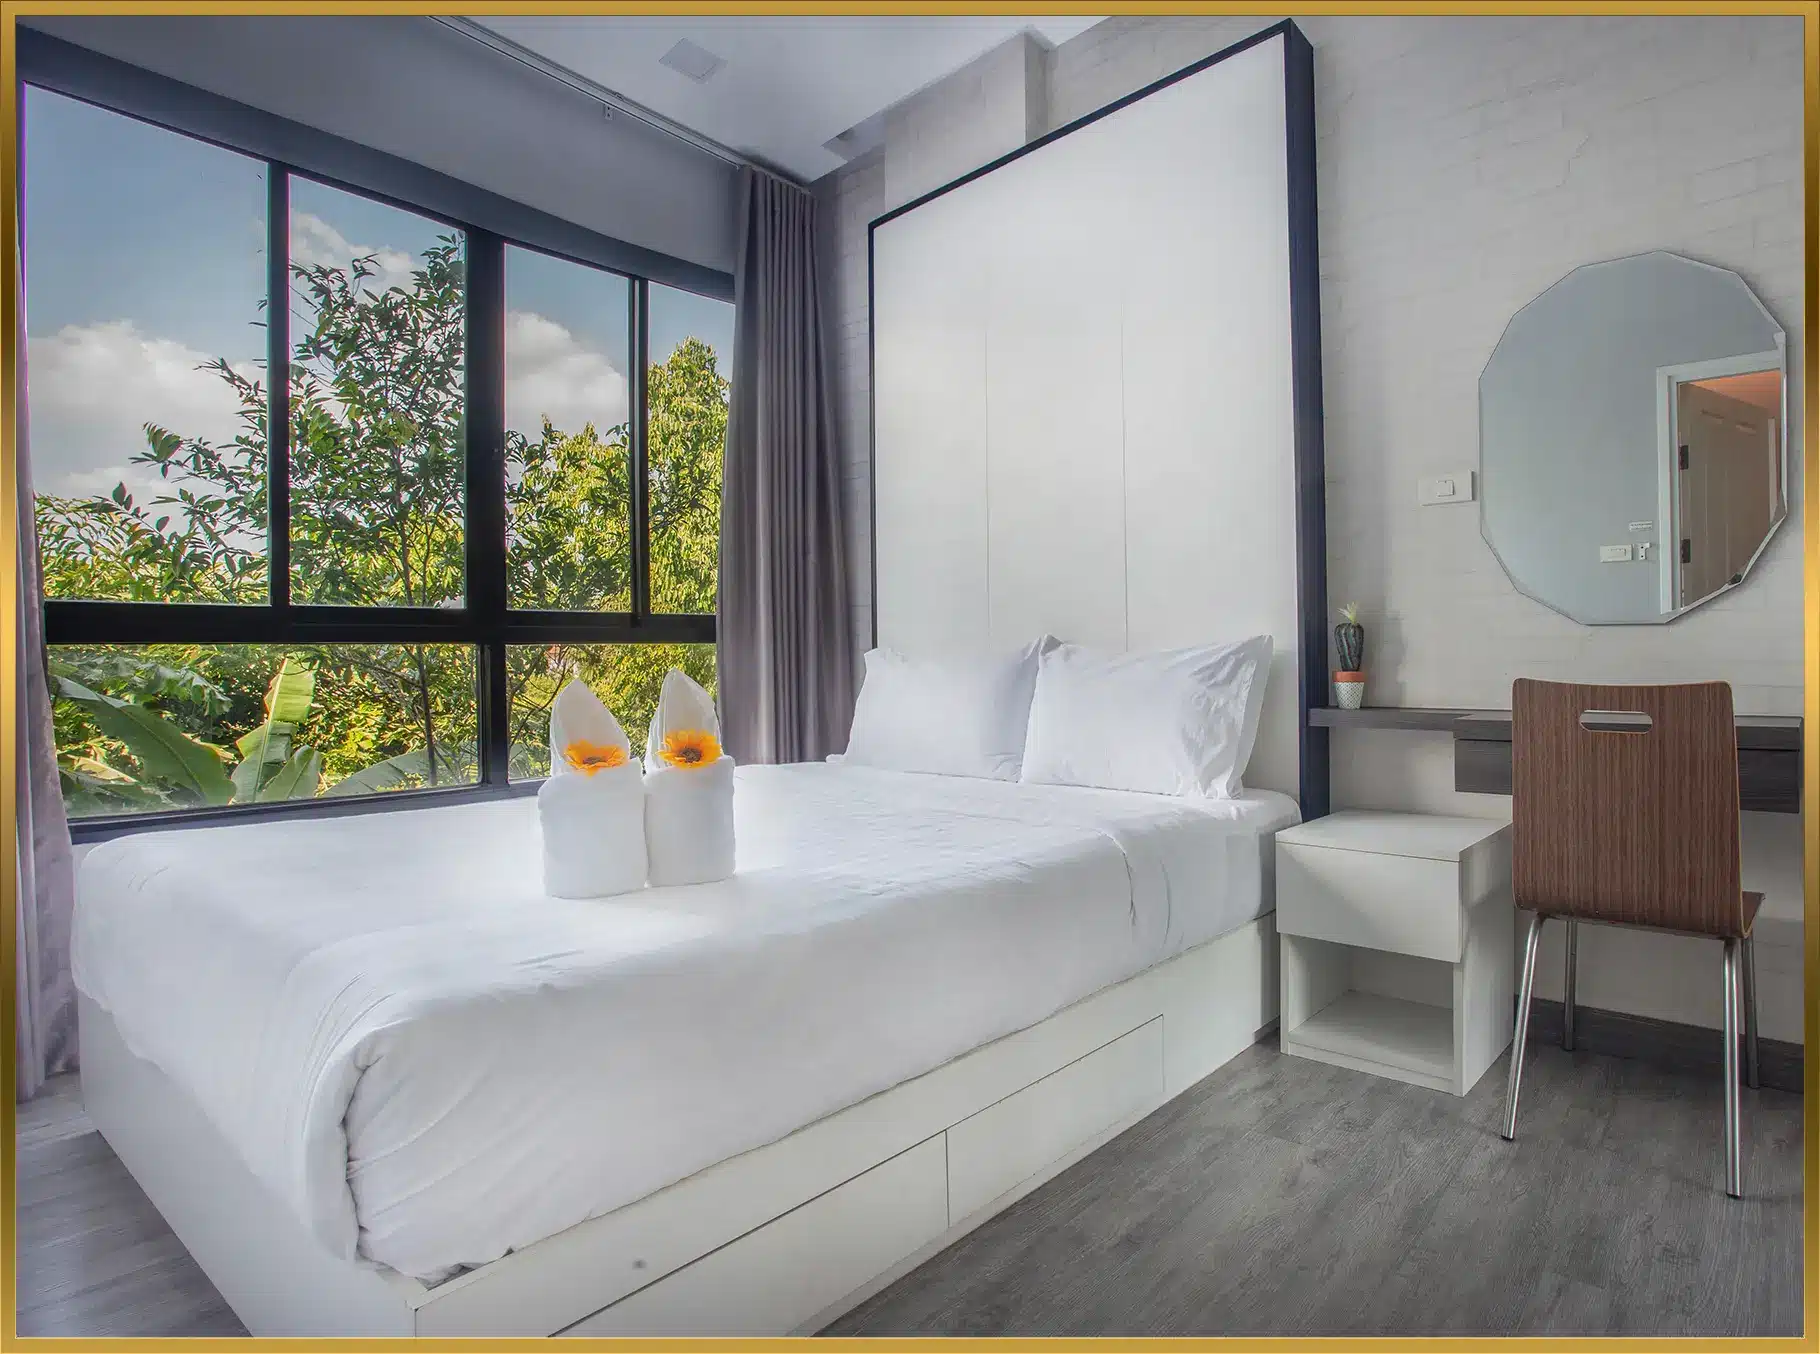 โรงแรม T62Residence ที่พักคลอง 5  ตำบล รังสิต คลองหลวง ธัญบุรี ปทุมธานี ห้องพักรายวันคลอง 5 ราคา 950 บาท